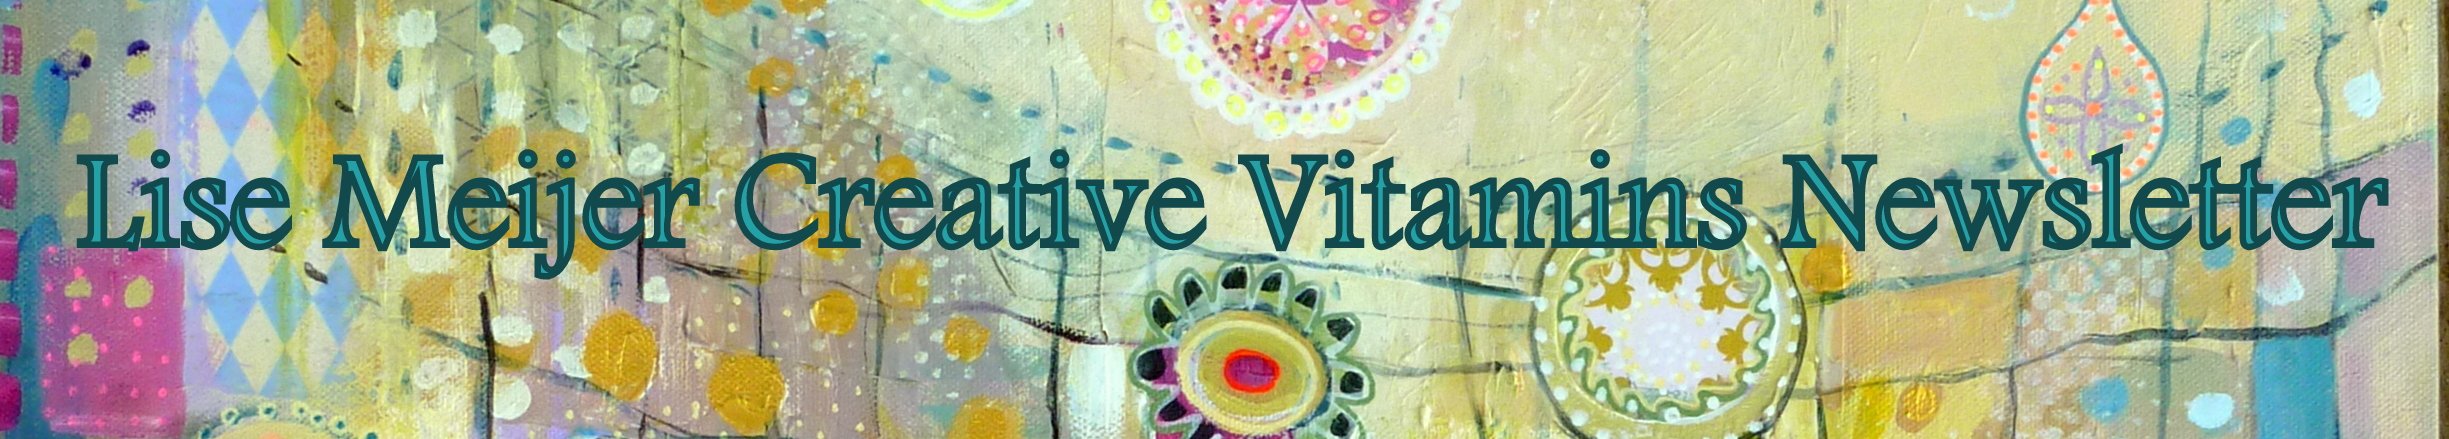 Creative Vitamins newsletter